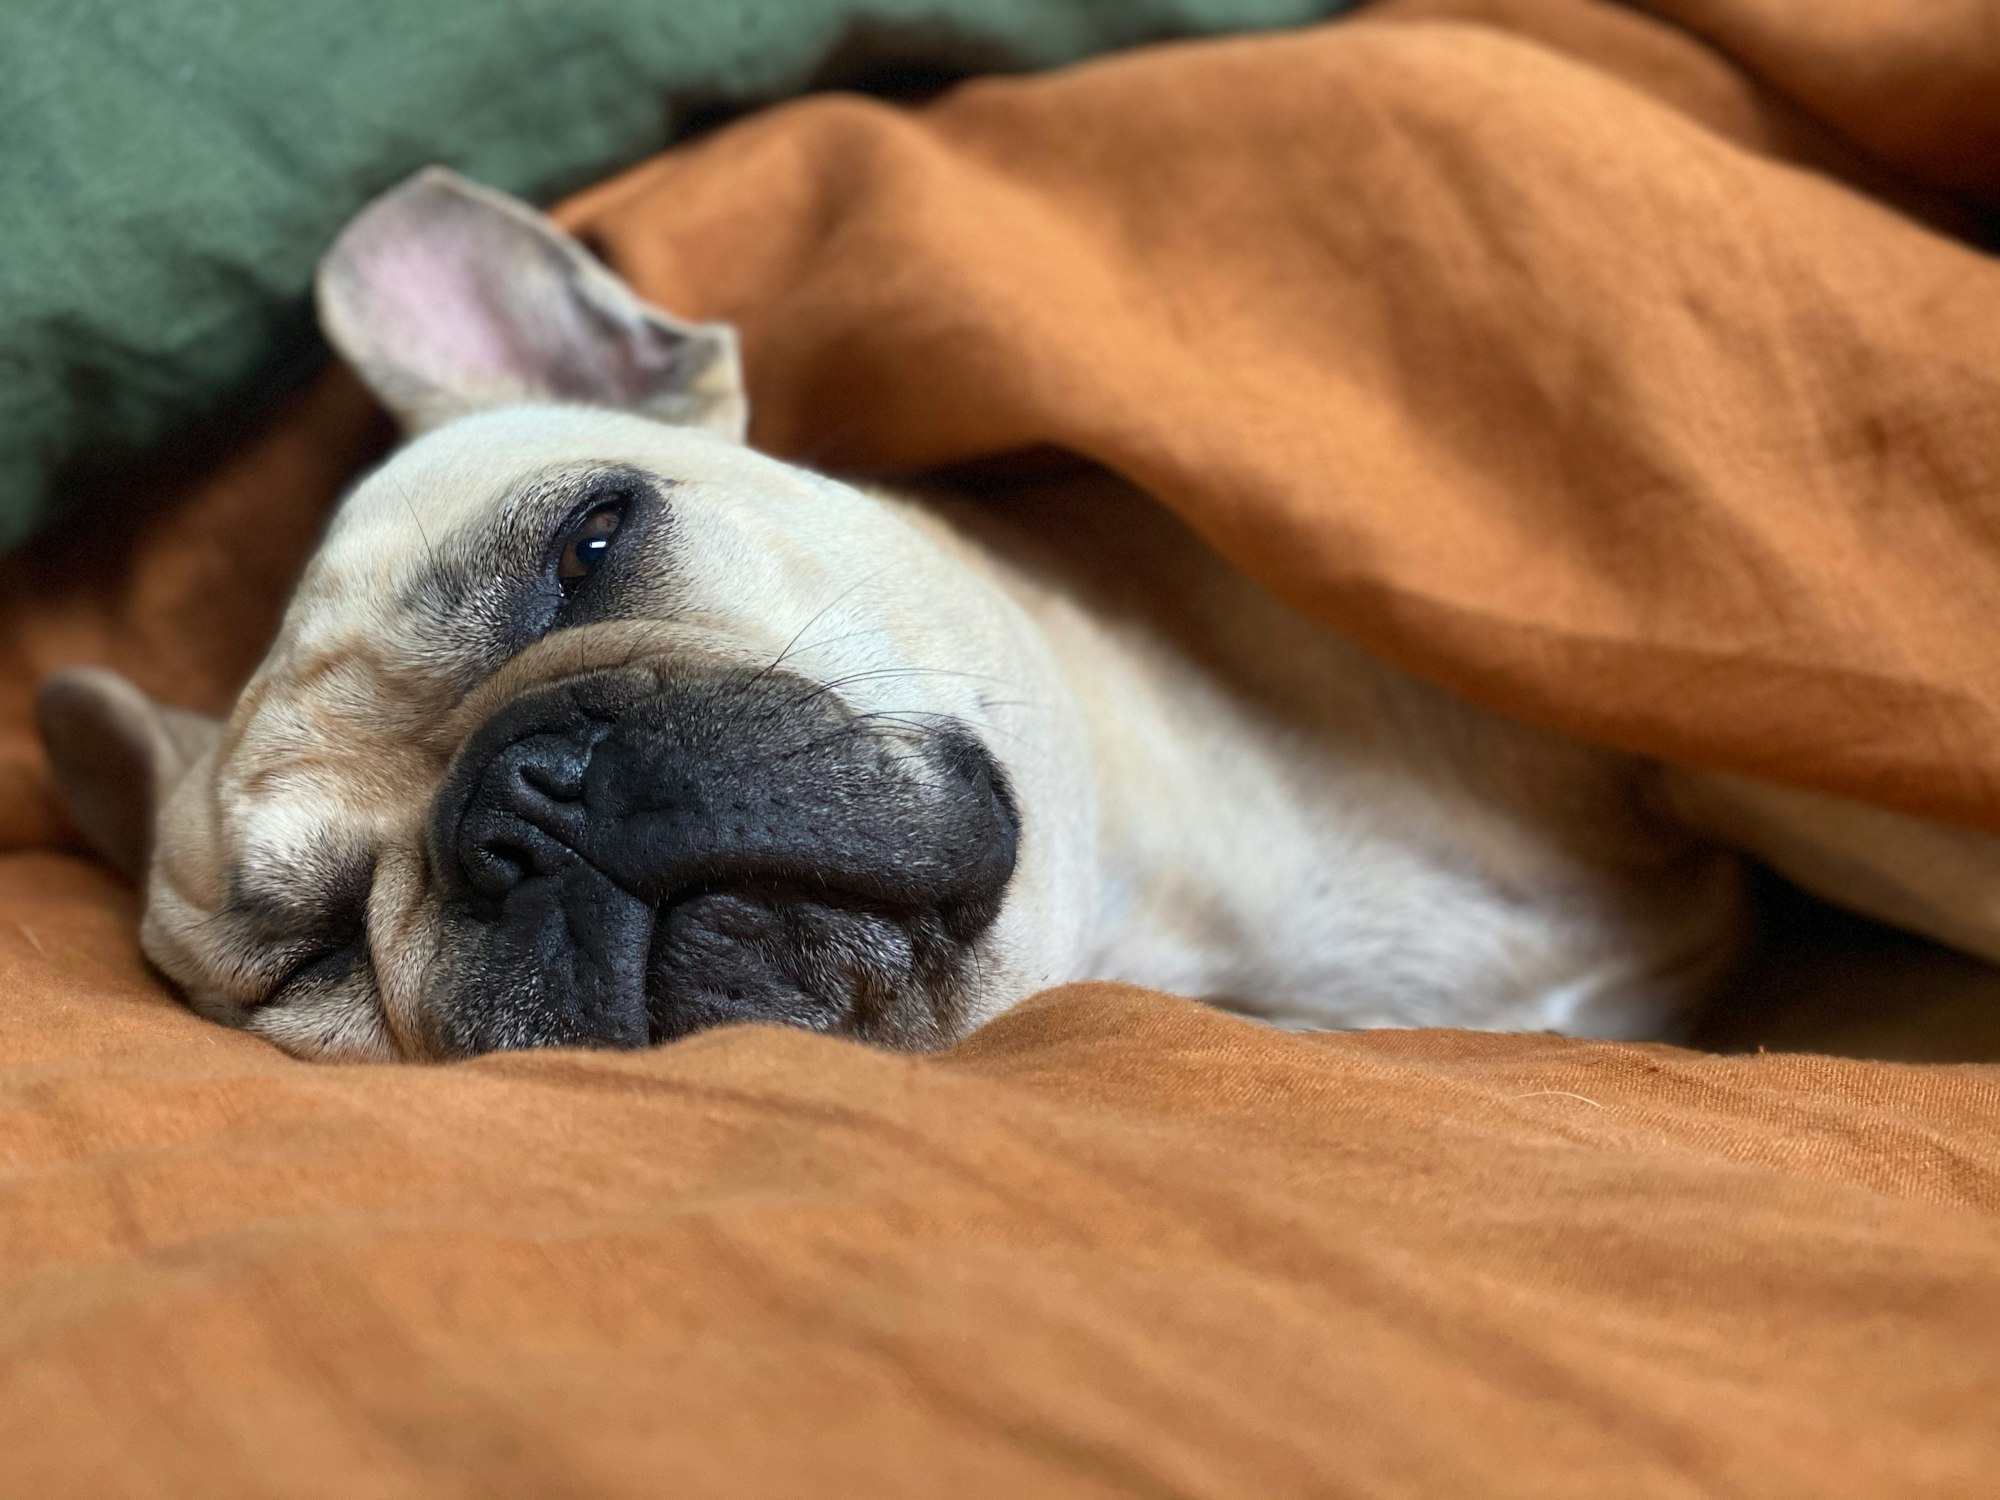 French bulldog sleeping on an orange bedspread